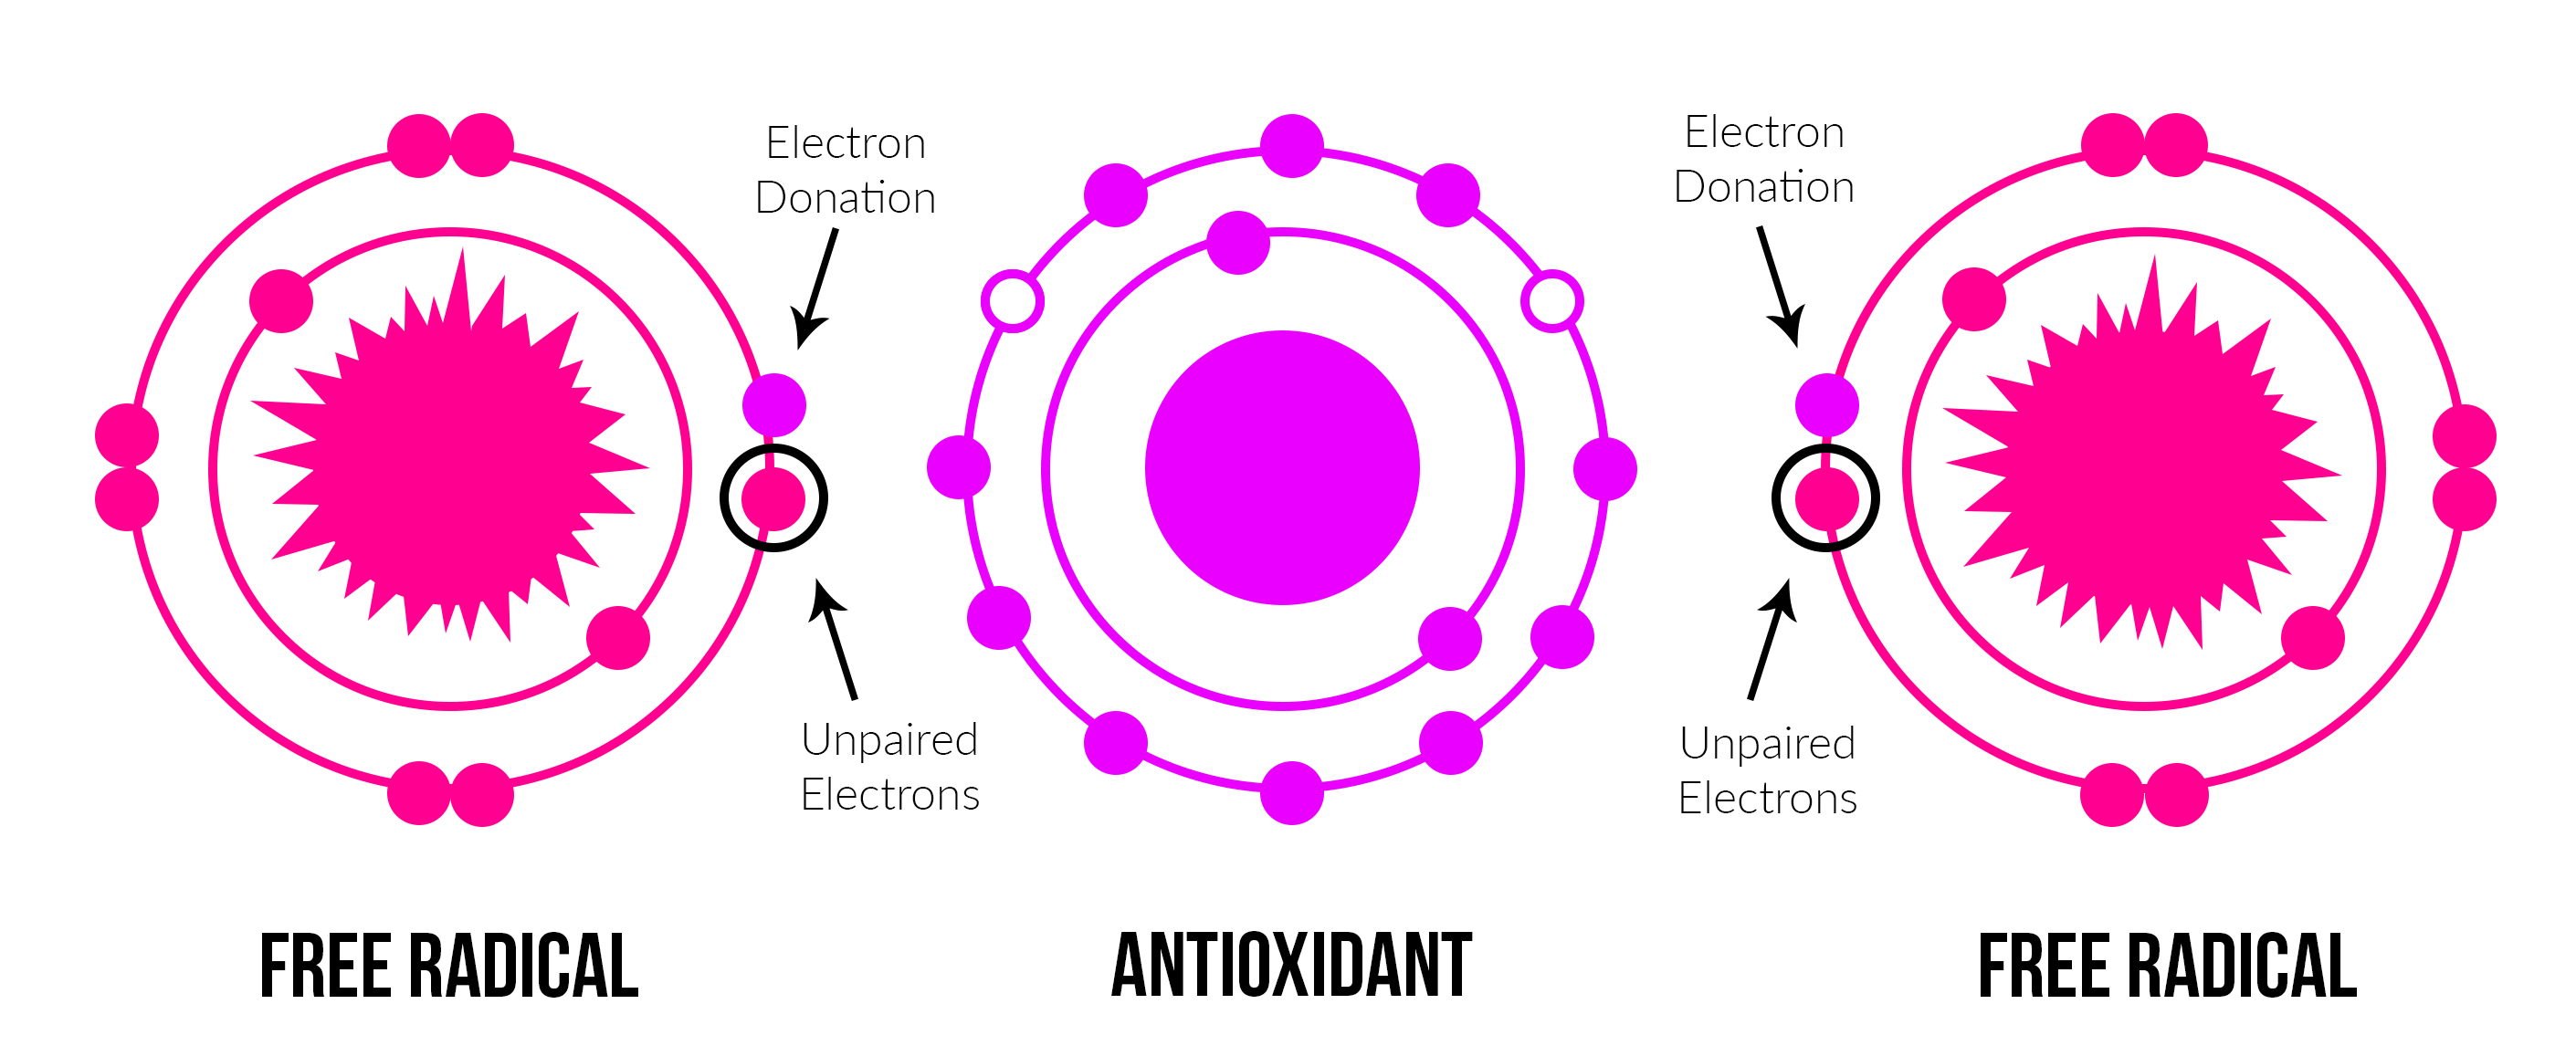 Antioxidant Donating Electrons Neutralizing Free Radicals